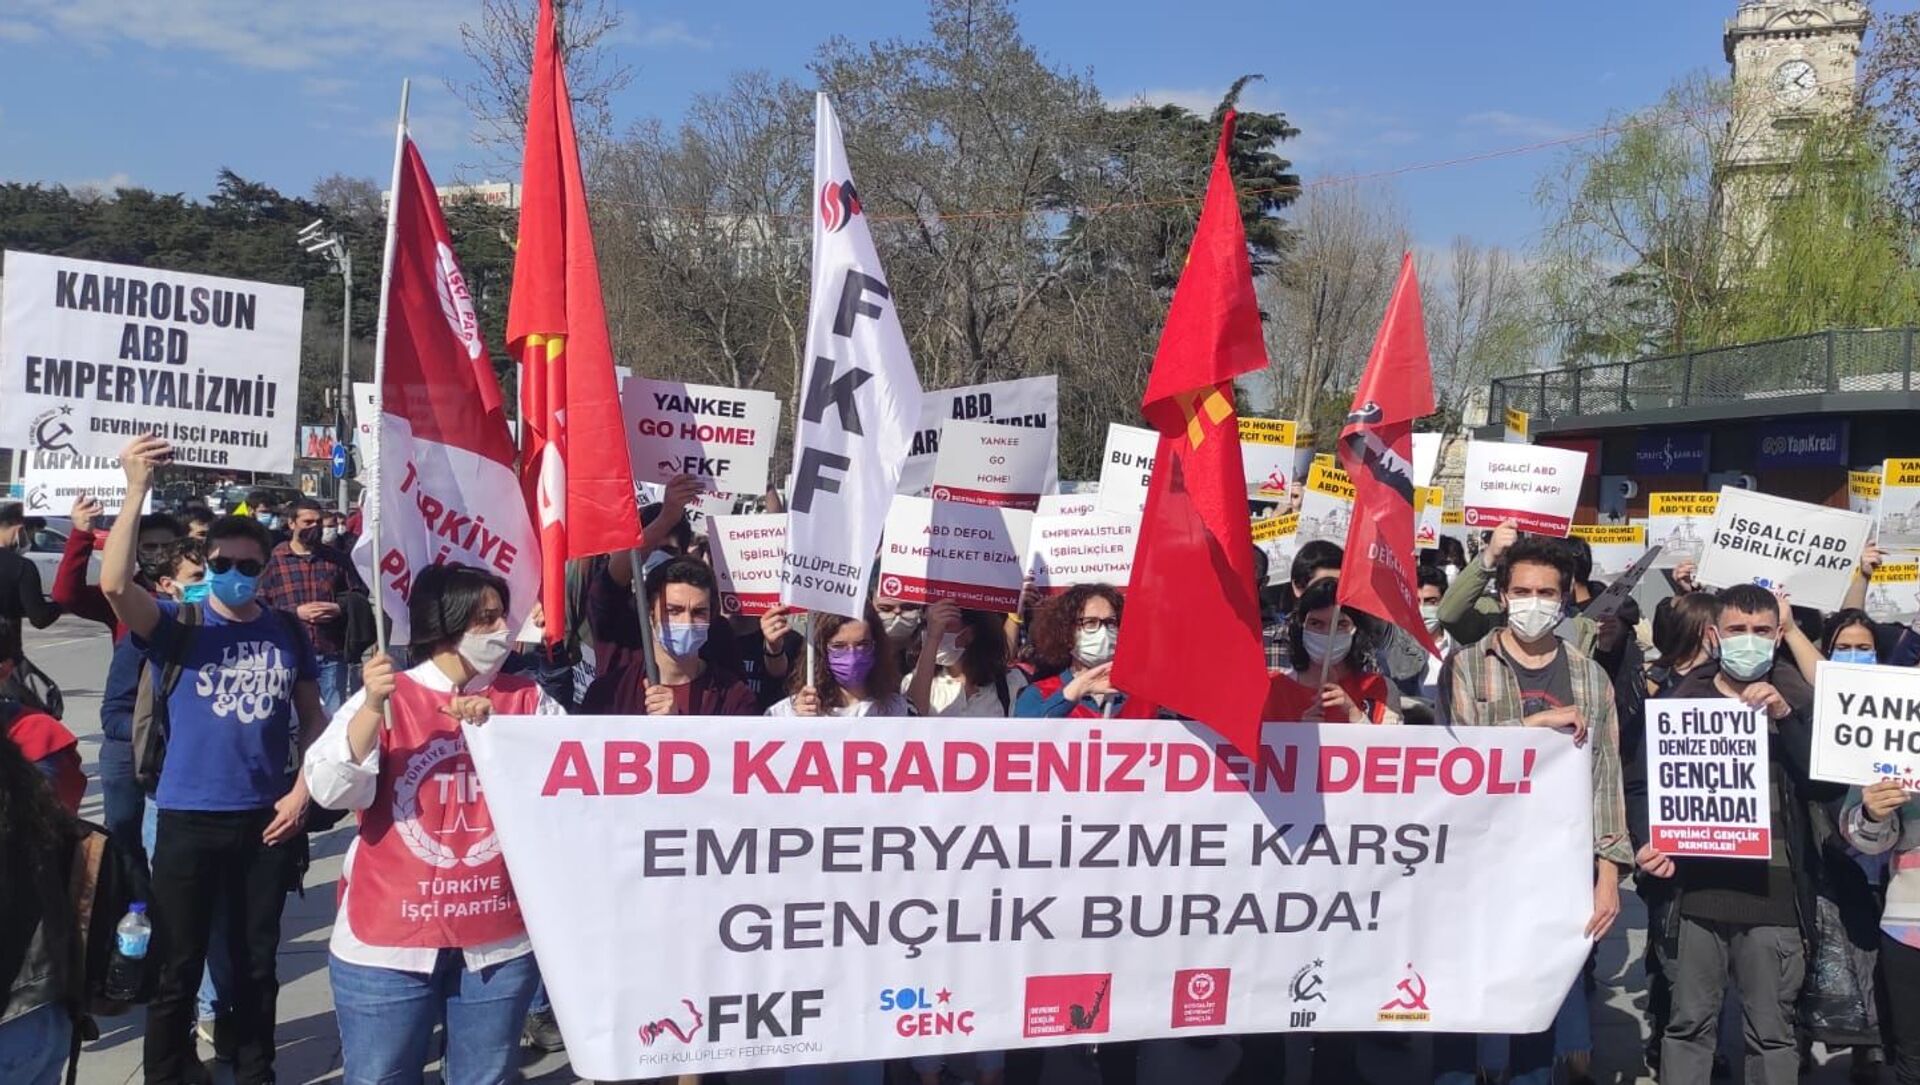 Турецкие молодежные организации выразили протест против отправки американских военных кораблей в Черном море - Sputnik Абхазия, 1920, 14.04.2021